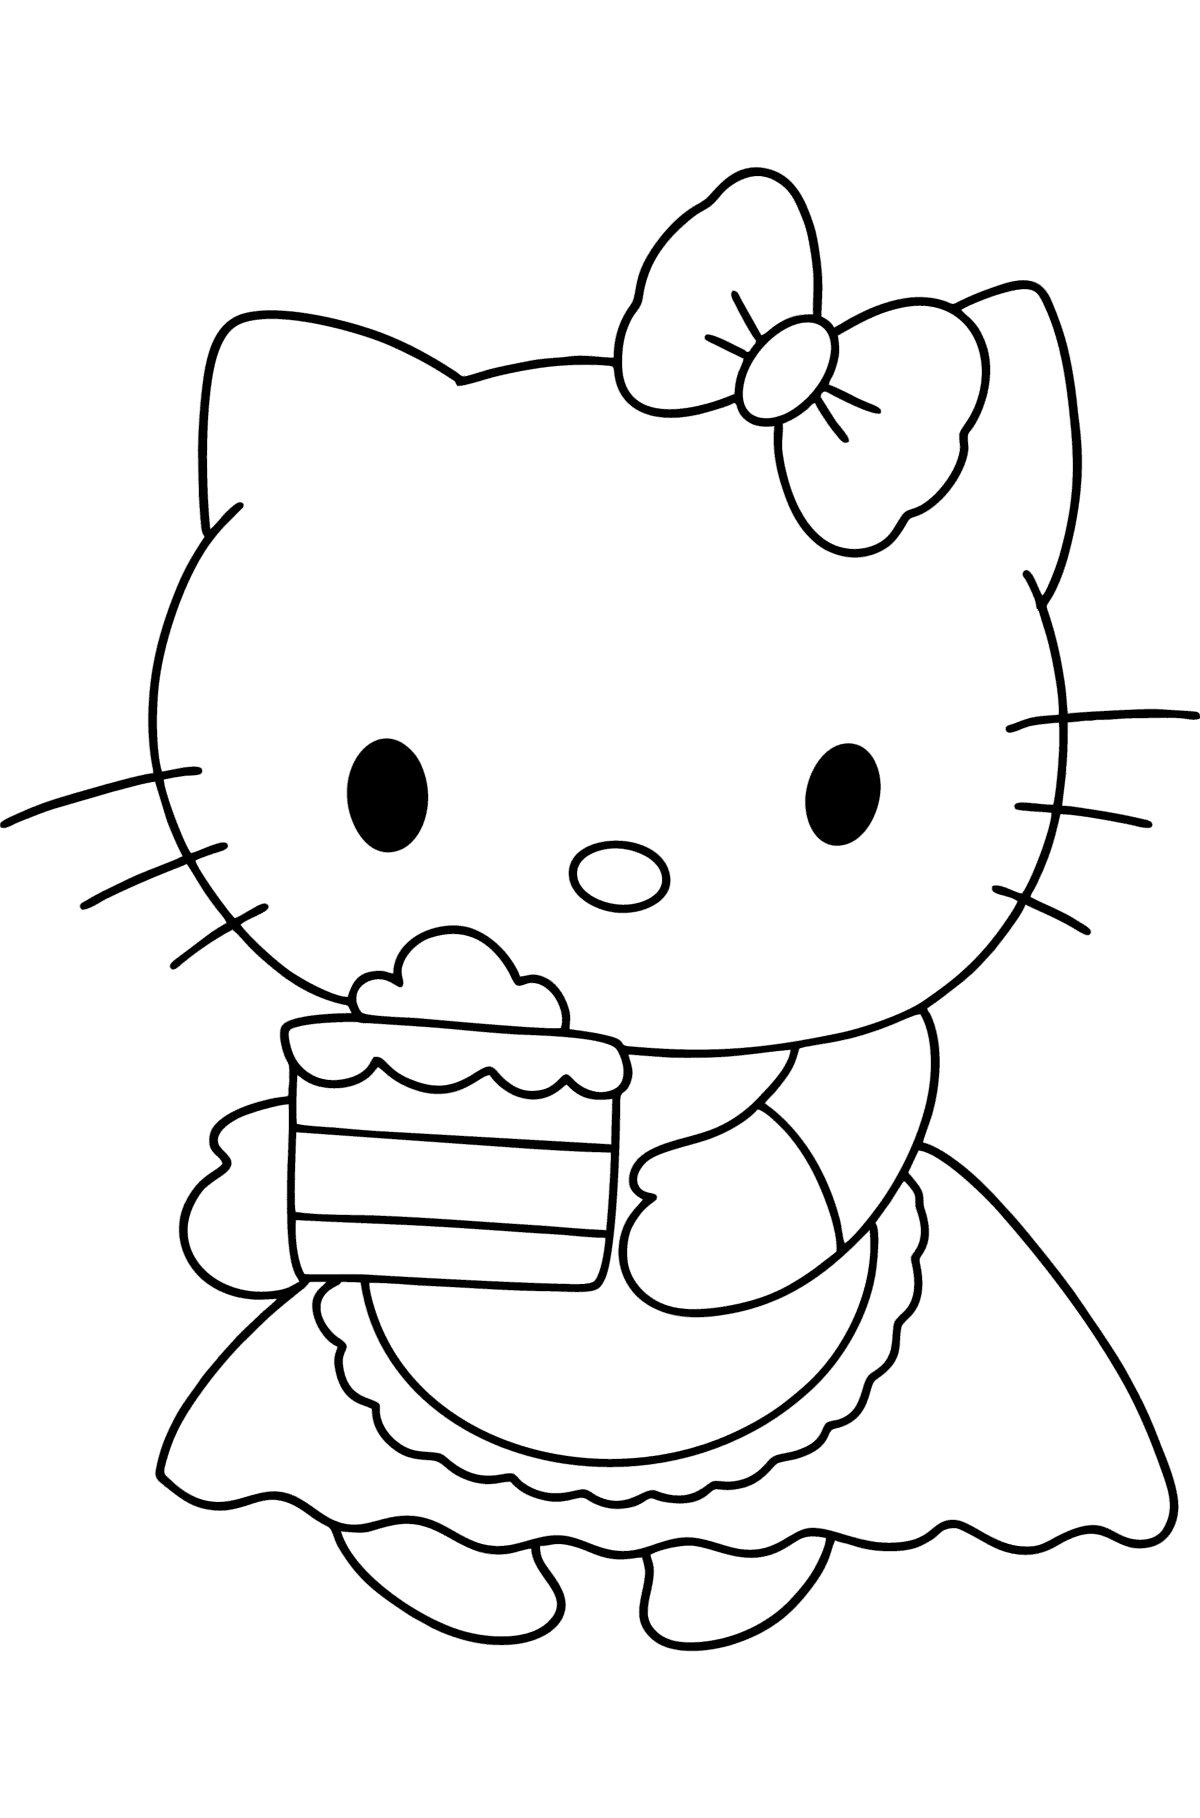 Dibujo de Hello Kitty y pastel para colorear - Dibujos para Colorear para Niños